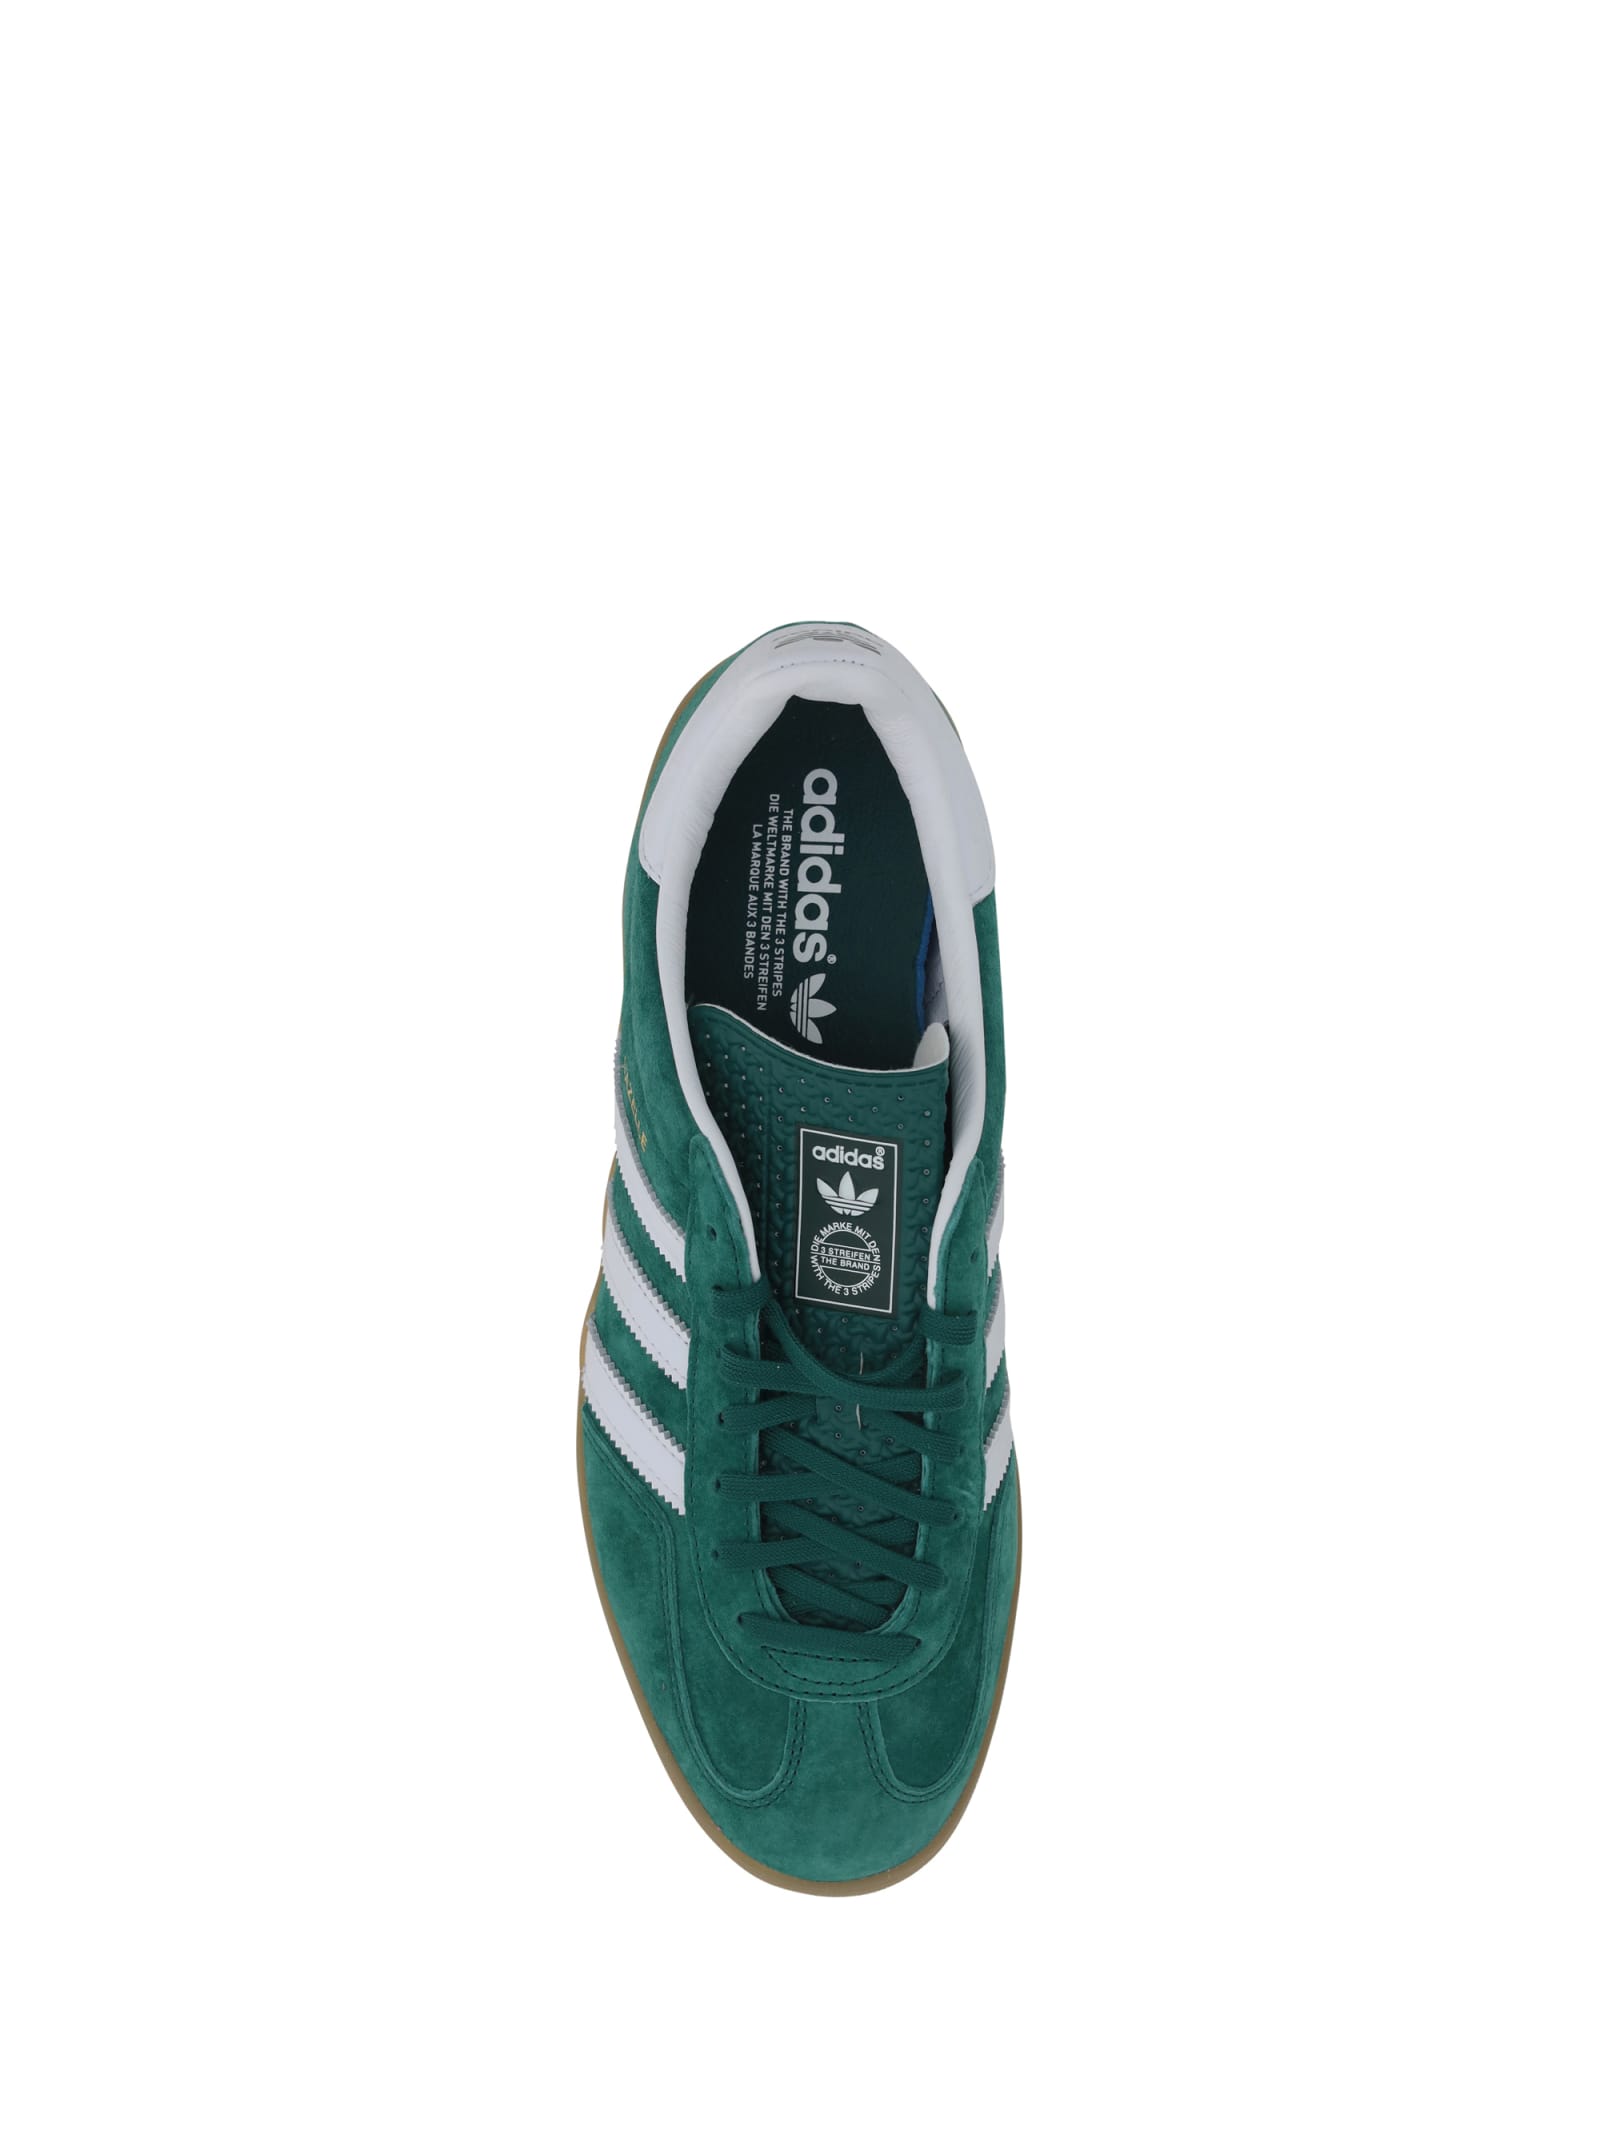 Shop Adidas Originals Gazelle Indoor Sneakers In Cgreen/ftwwht/gum2